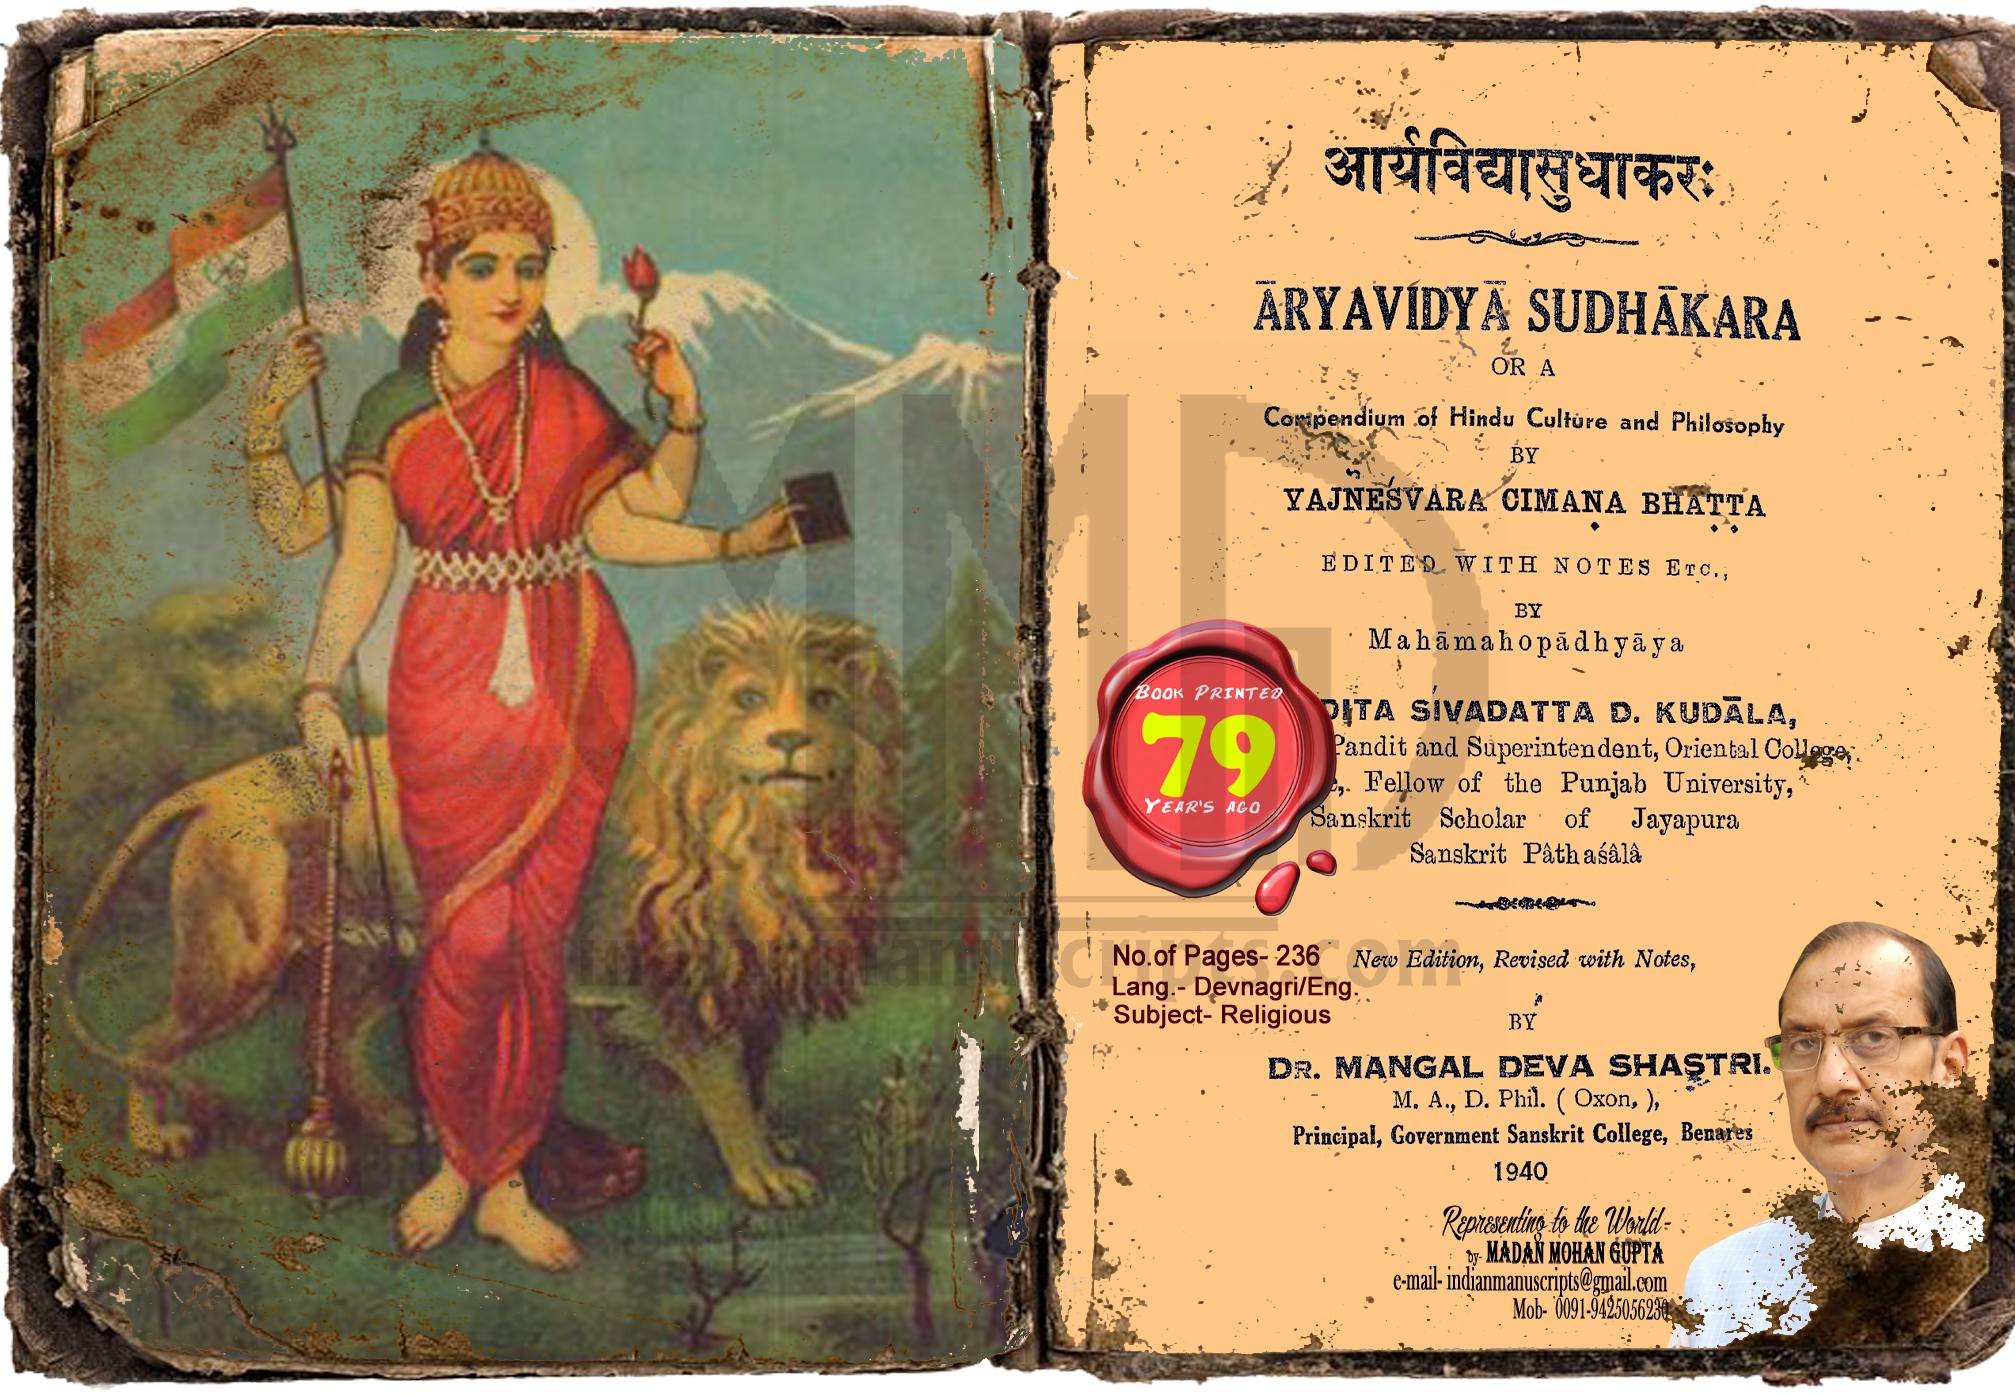 Aryavidhya Sudhakara